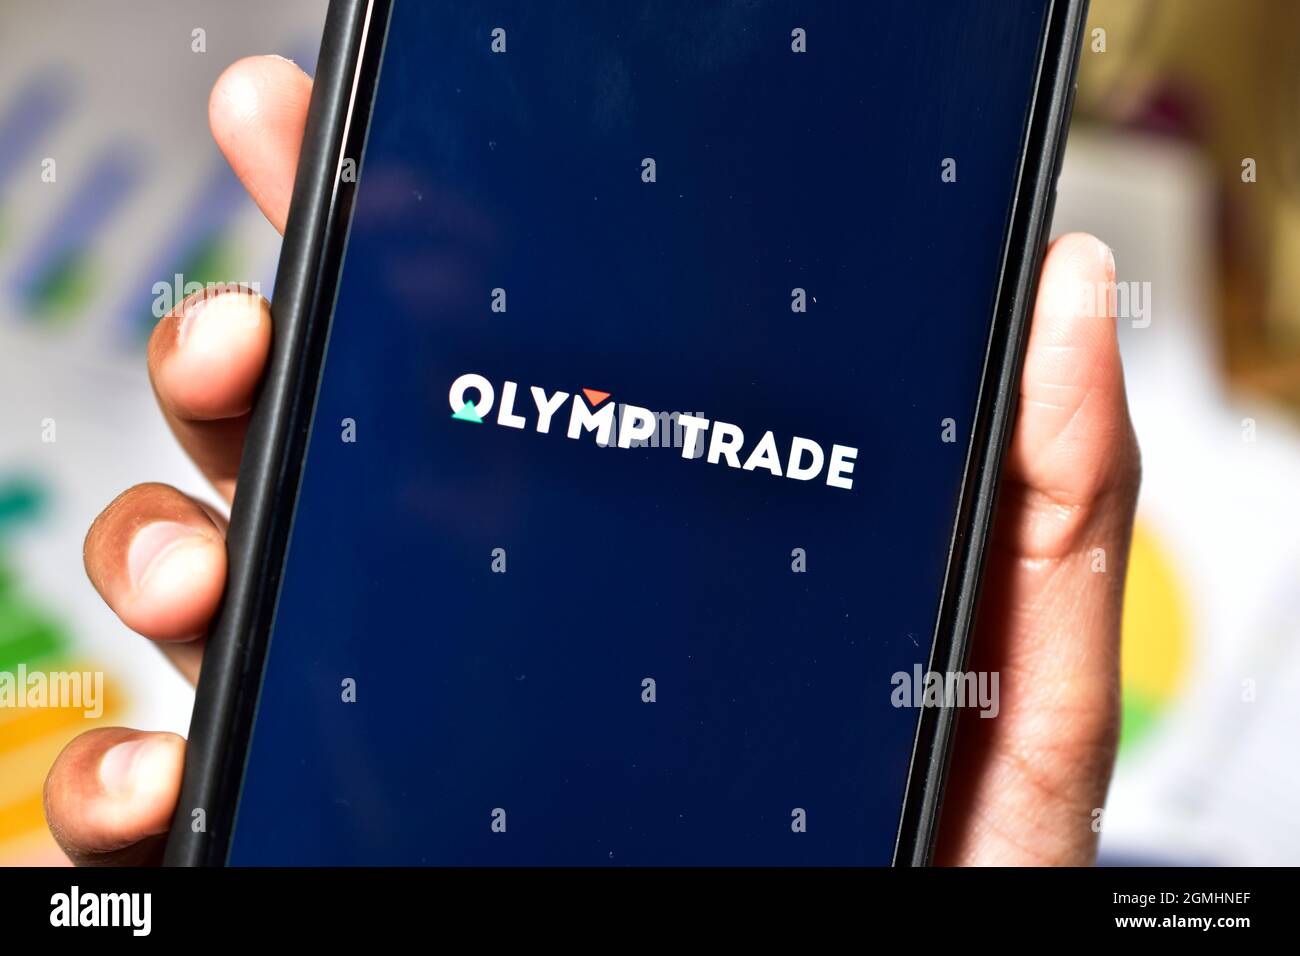 New Delhi, India, 12 January 2020:- Olymp Trade logo on smartphone Stock Photo